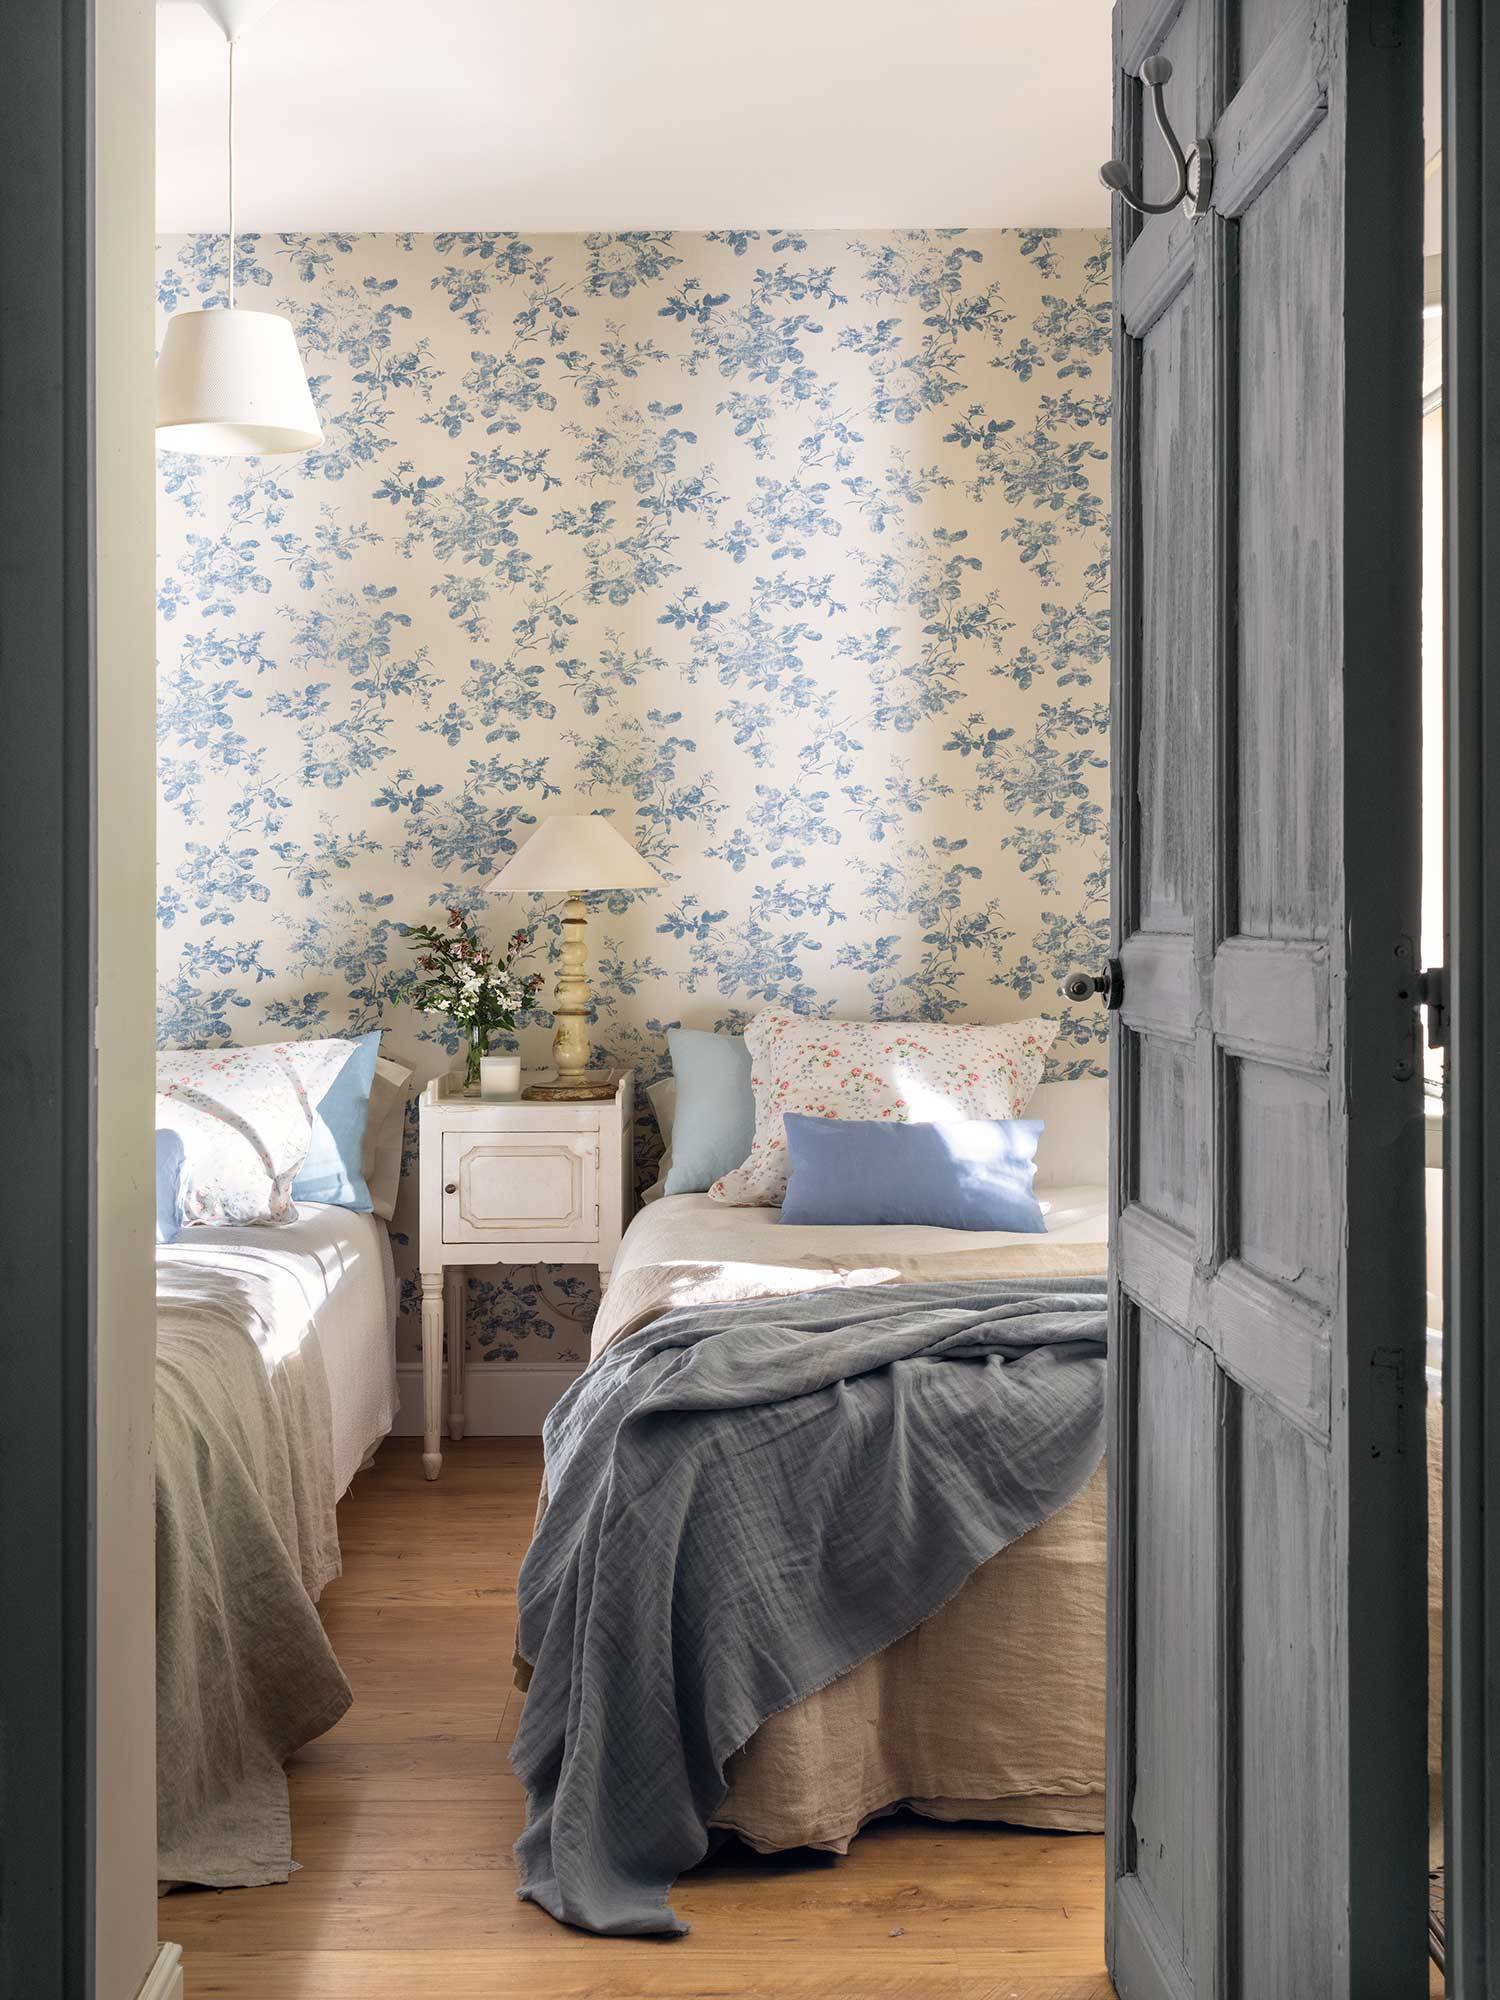 Habitación infnatil con muebles blancos y papel pintado de flores azules.